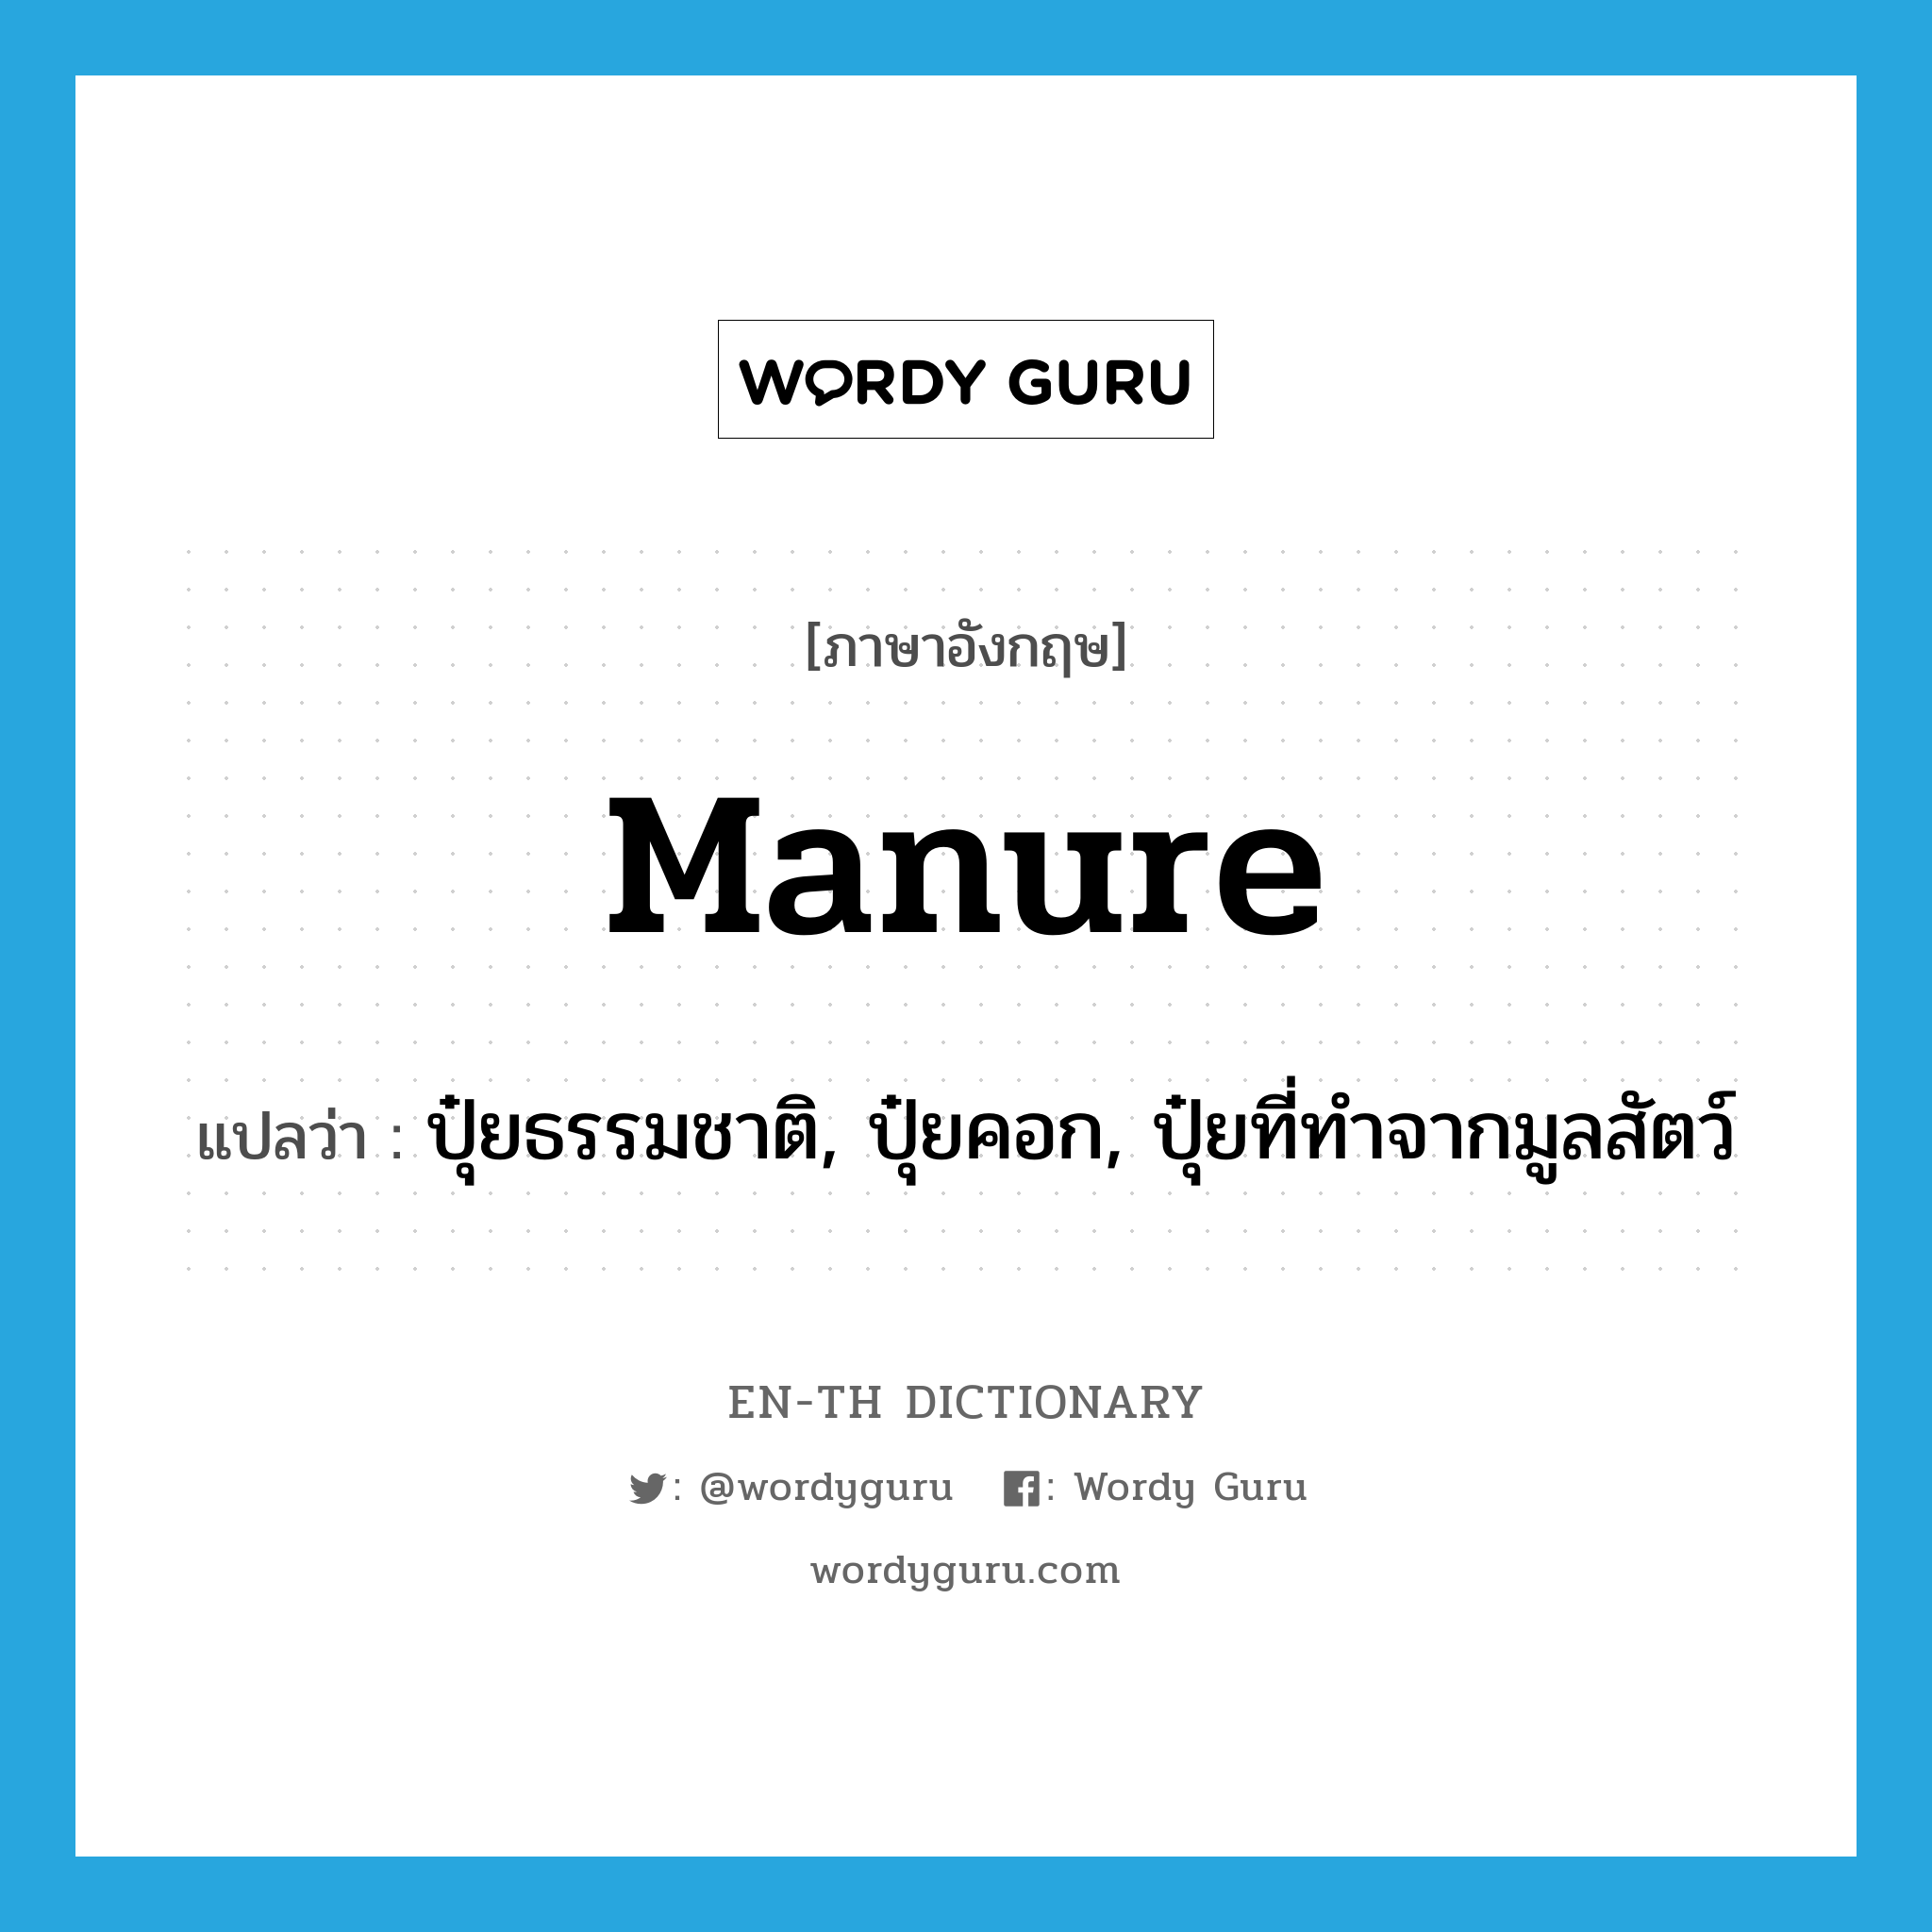 manure แปลว่า?, คำศัพท์ภาษาอังกฤษ manure แปลว่า ปุ๋ยธรรมชาติ, ปุ๋ยคอก, ปุ๋ยที่ทำจากมูลสัตว์ ประเภท N หมวด N